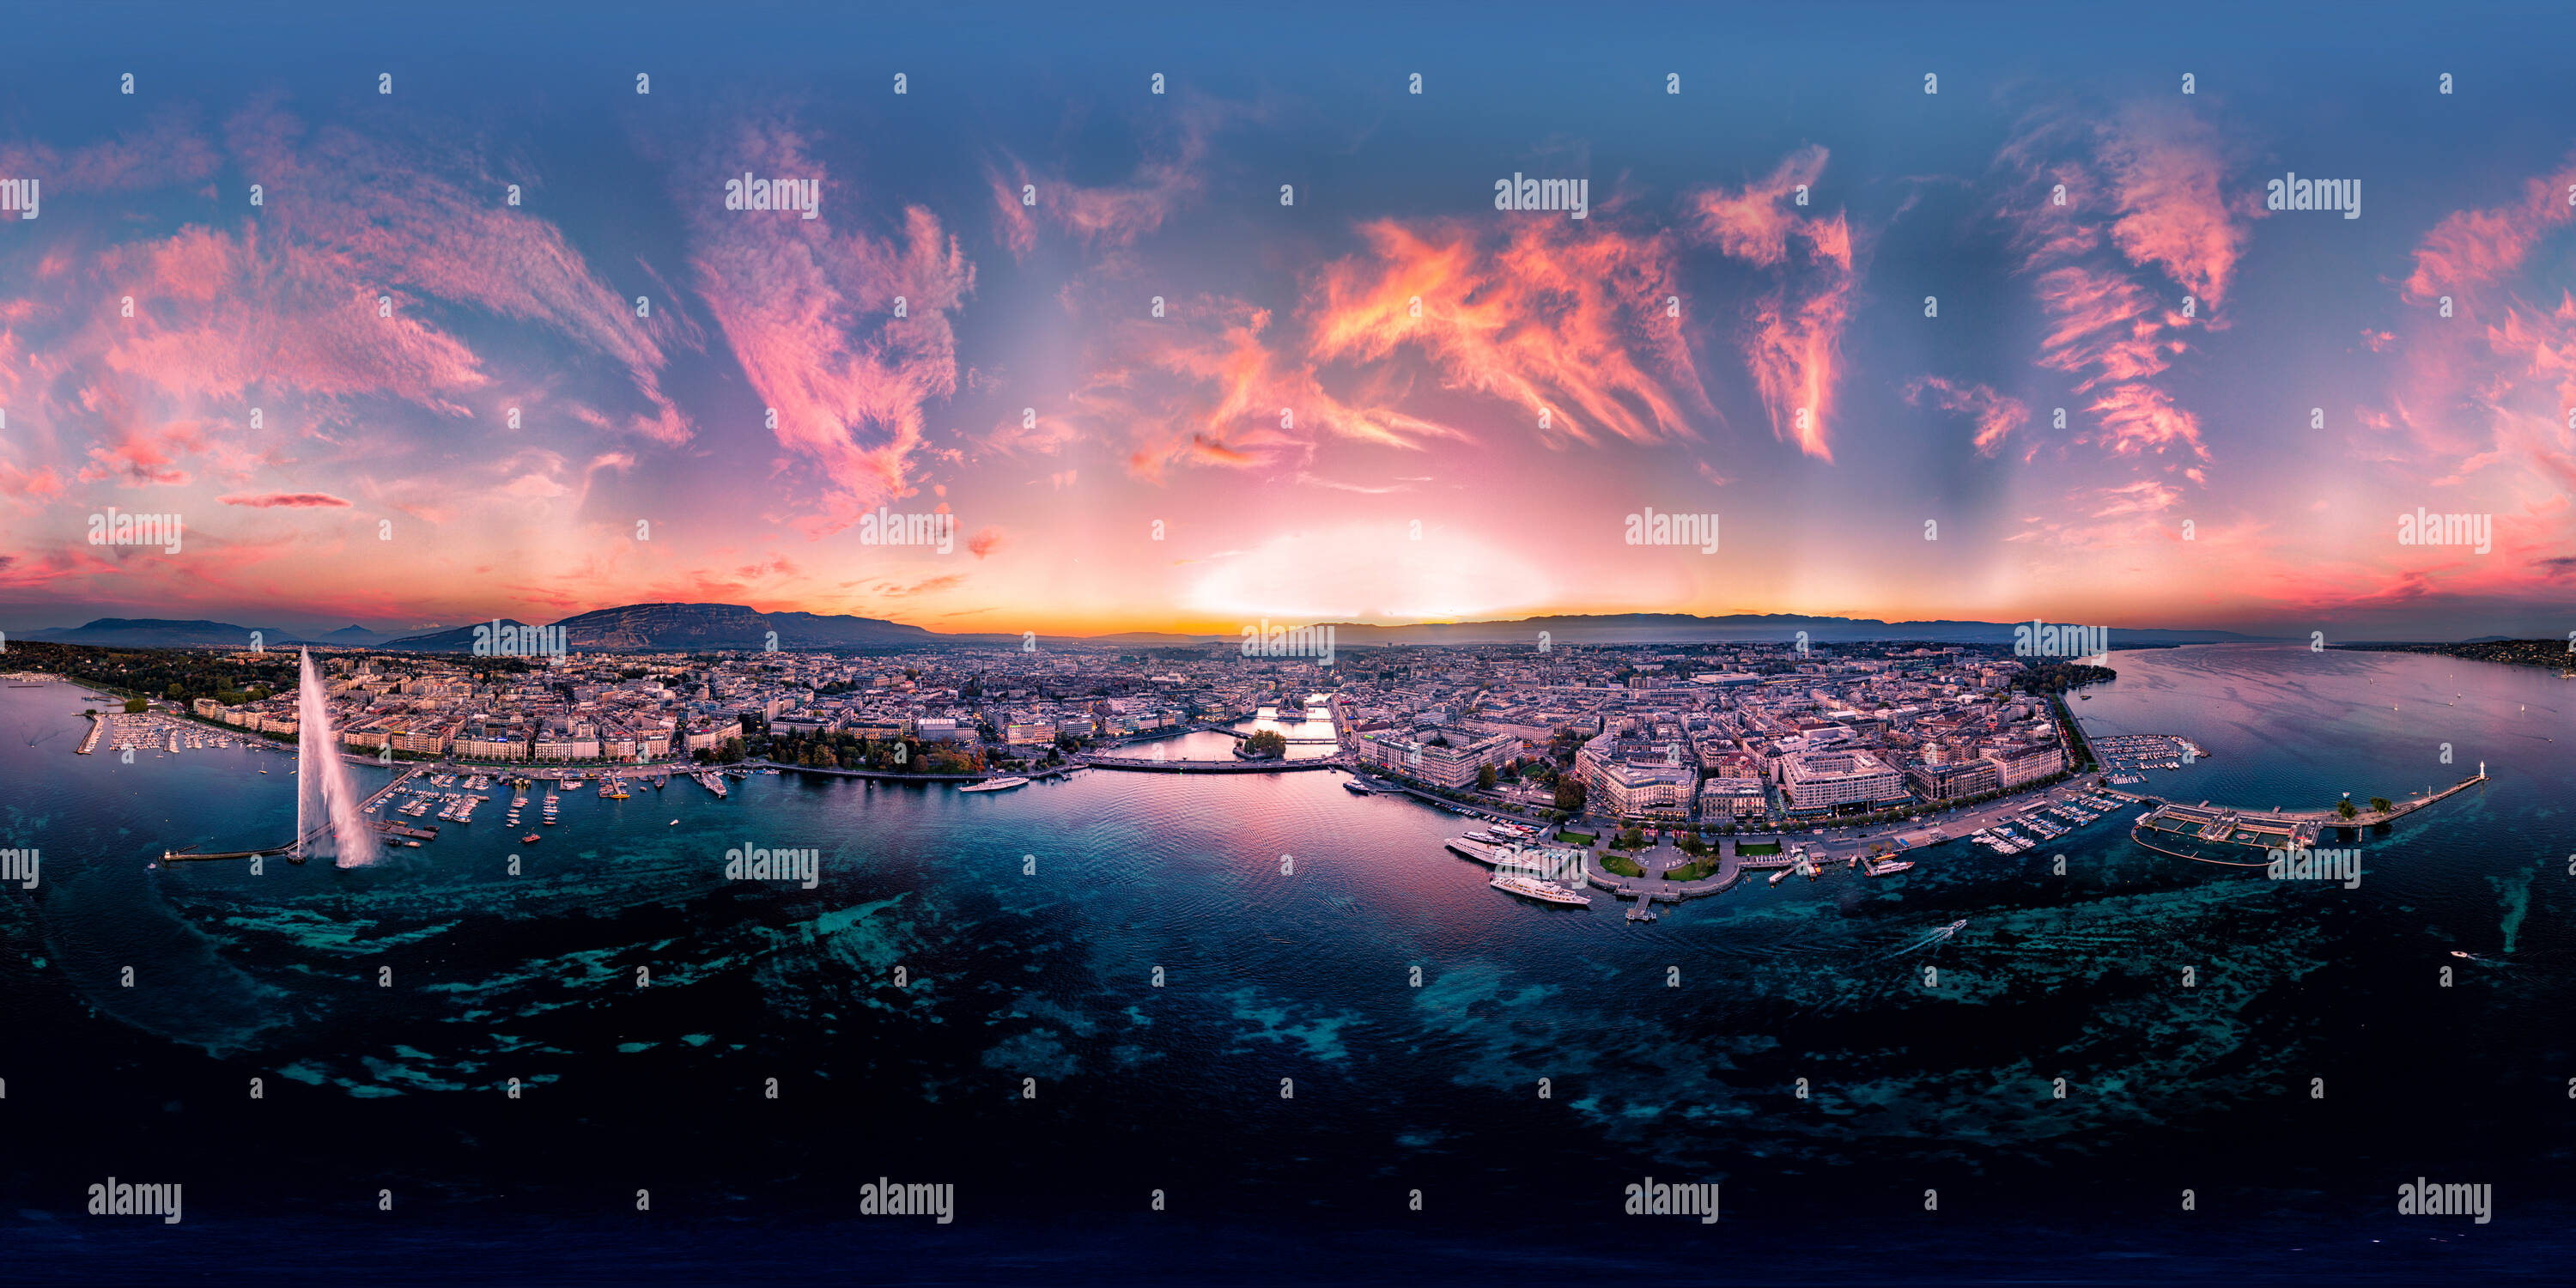 360 degree panoramic view of Geneva sunset 20 gigapixel Skyline 360 Panorama, Switzerland